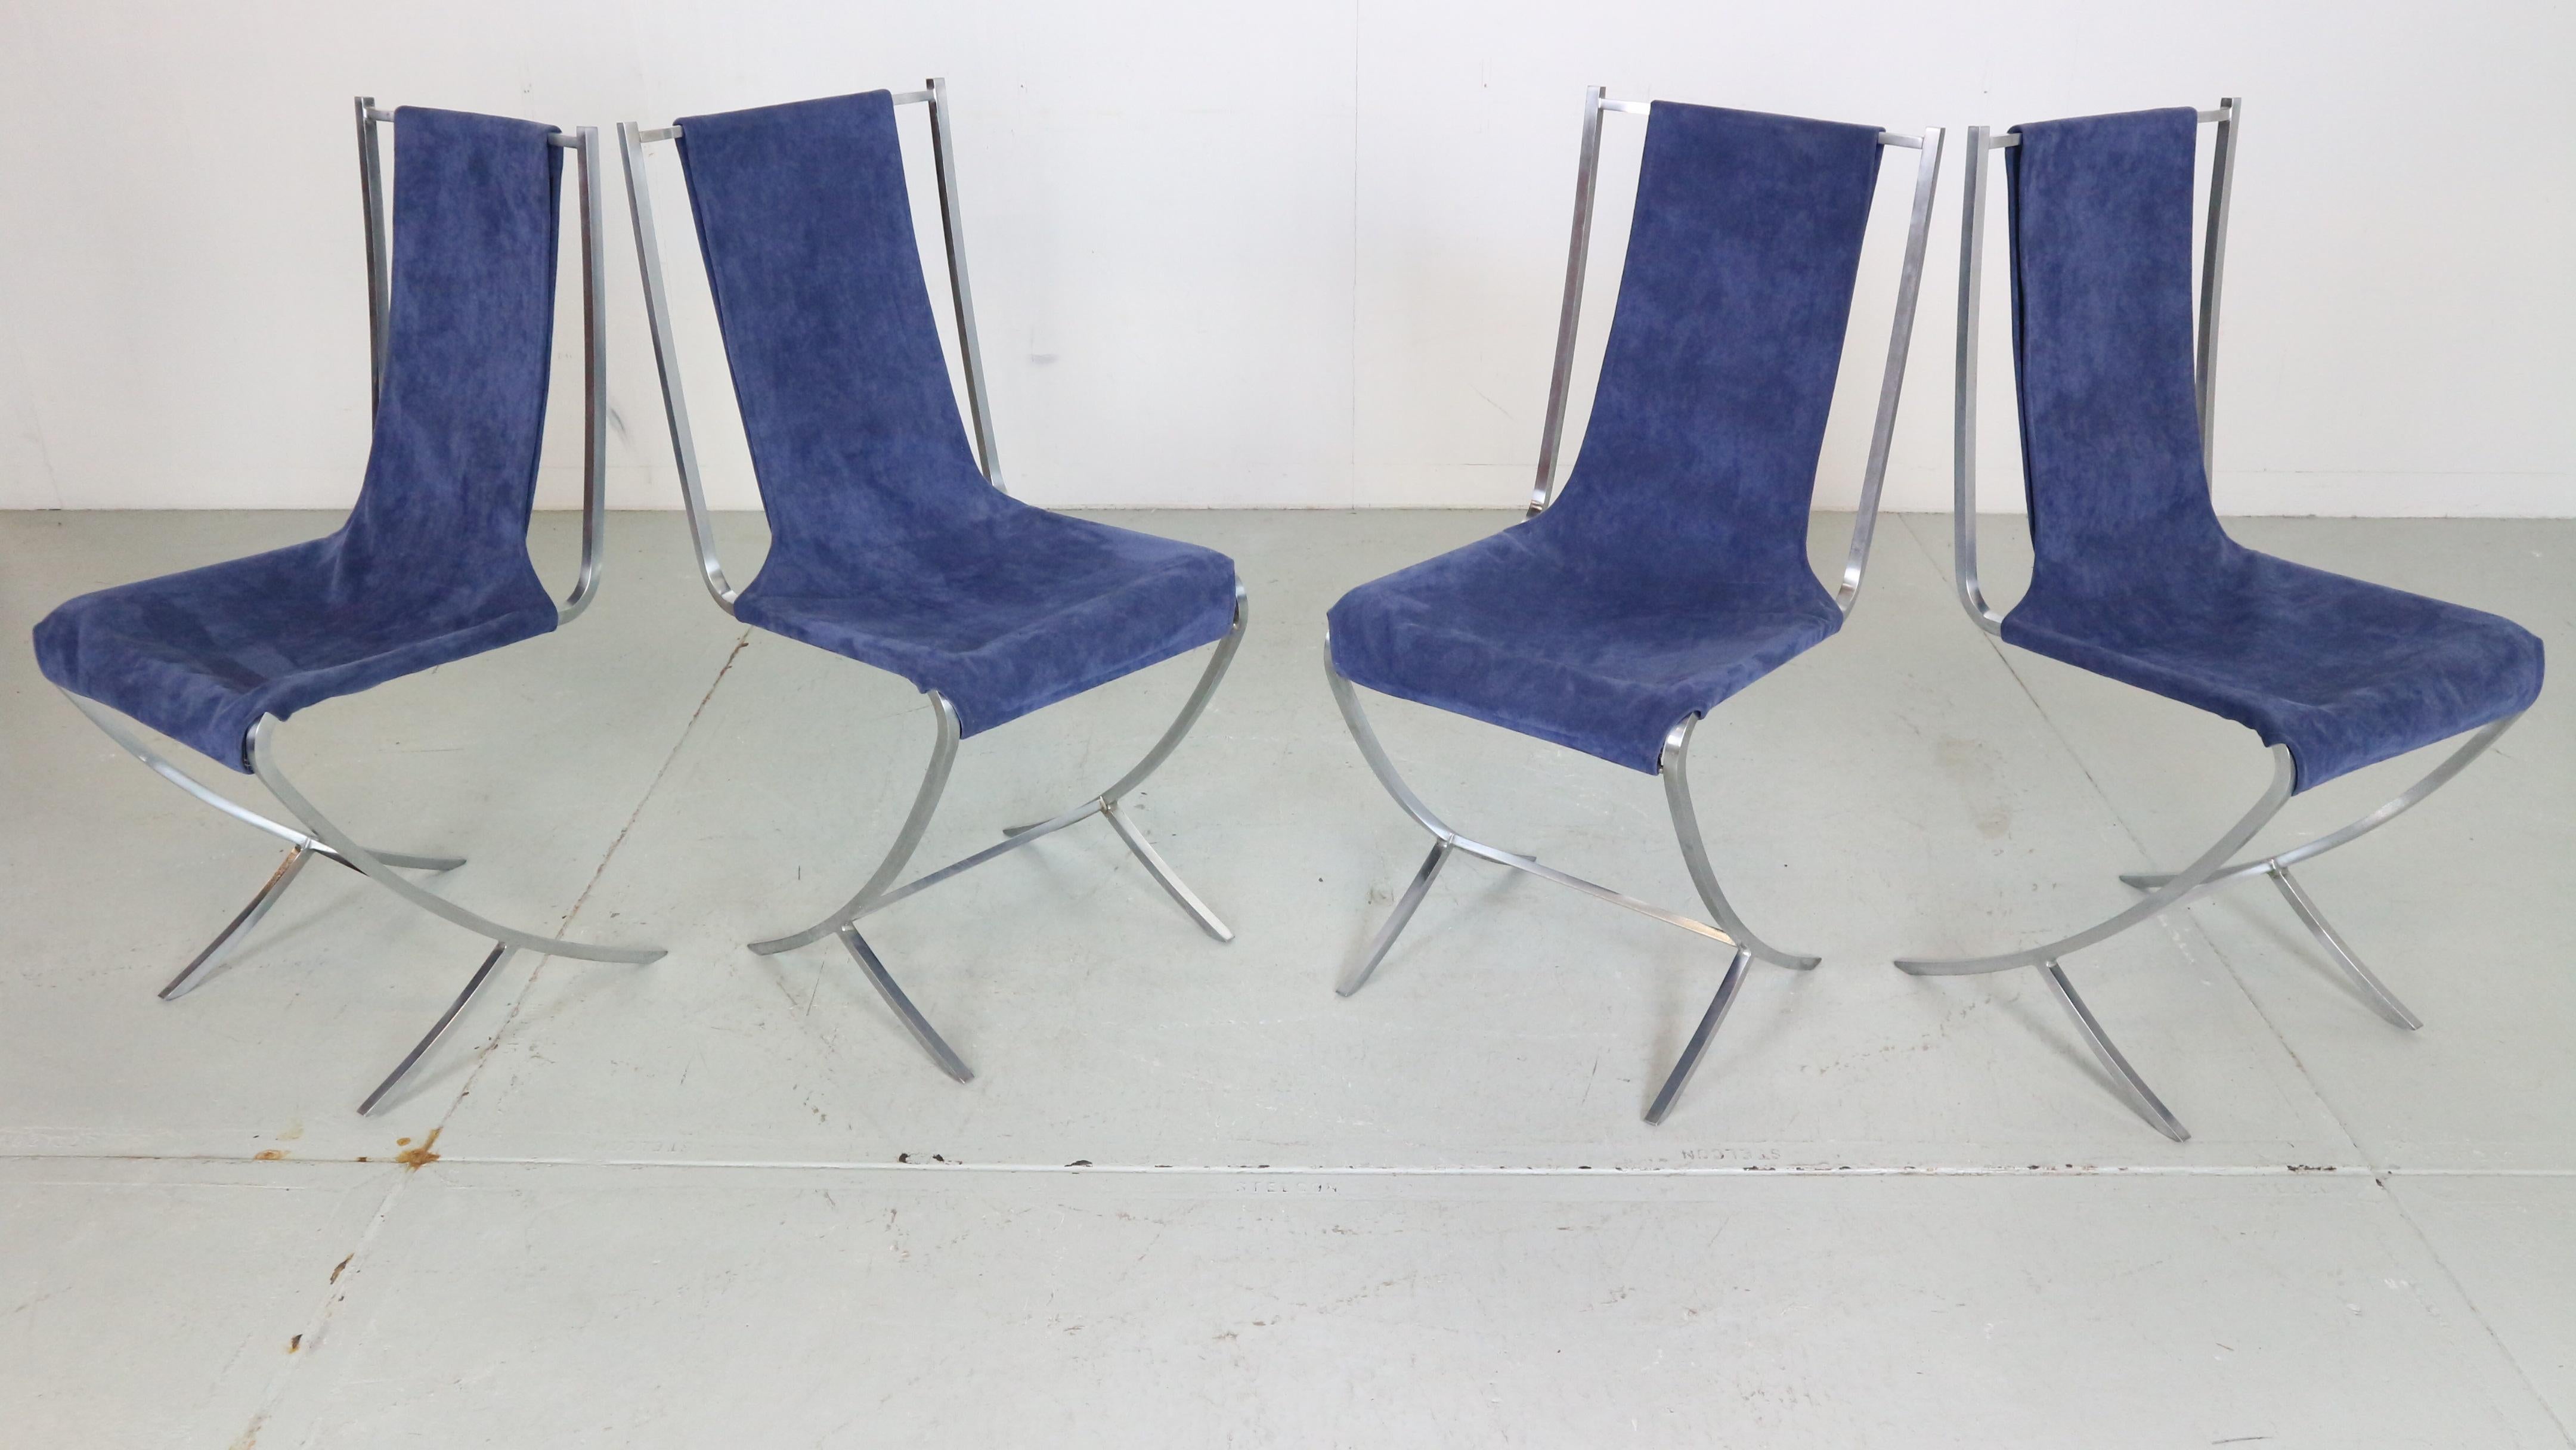 Dieses Set aus 4 Stühlen wurde von dem französischen Avantgarde-Designer Pierre Cardin für das bekannte Innenarchitekturbüro Maison Jansen in den 1970er Jahren in Frankreich entworfen.

Entspannen Sie sich auf extravagantem blauem Samt, der über